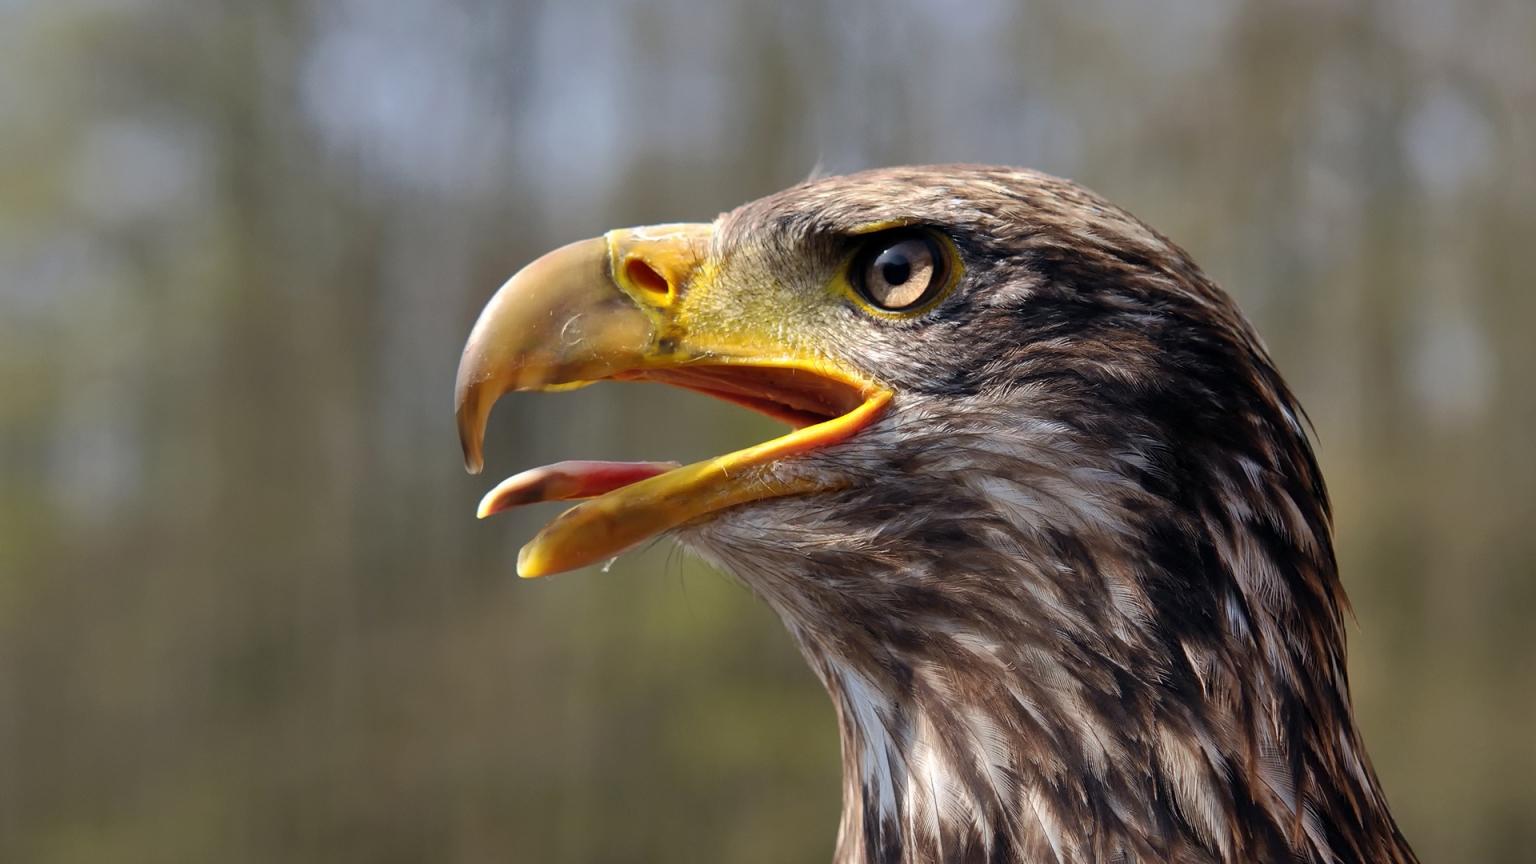 Juvenile Bald Eagle for 1536 x 864 HDTV resolution